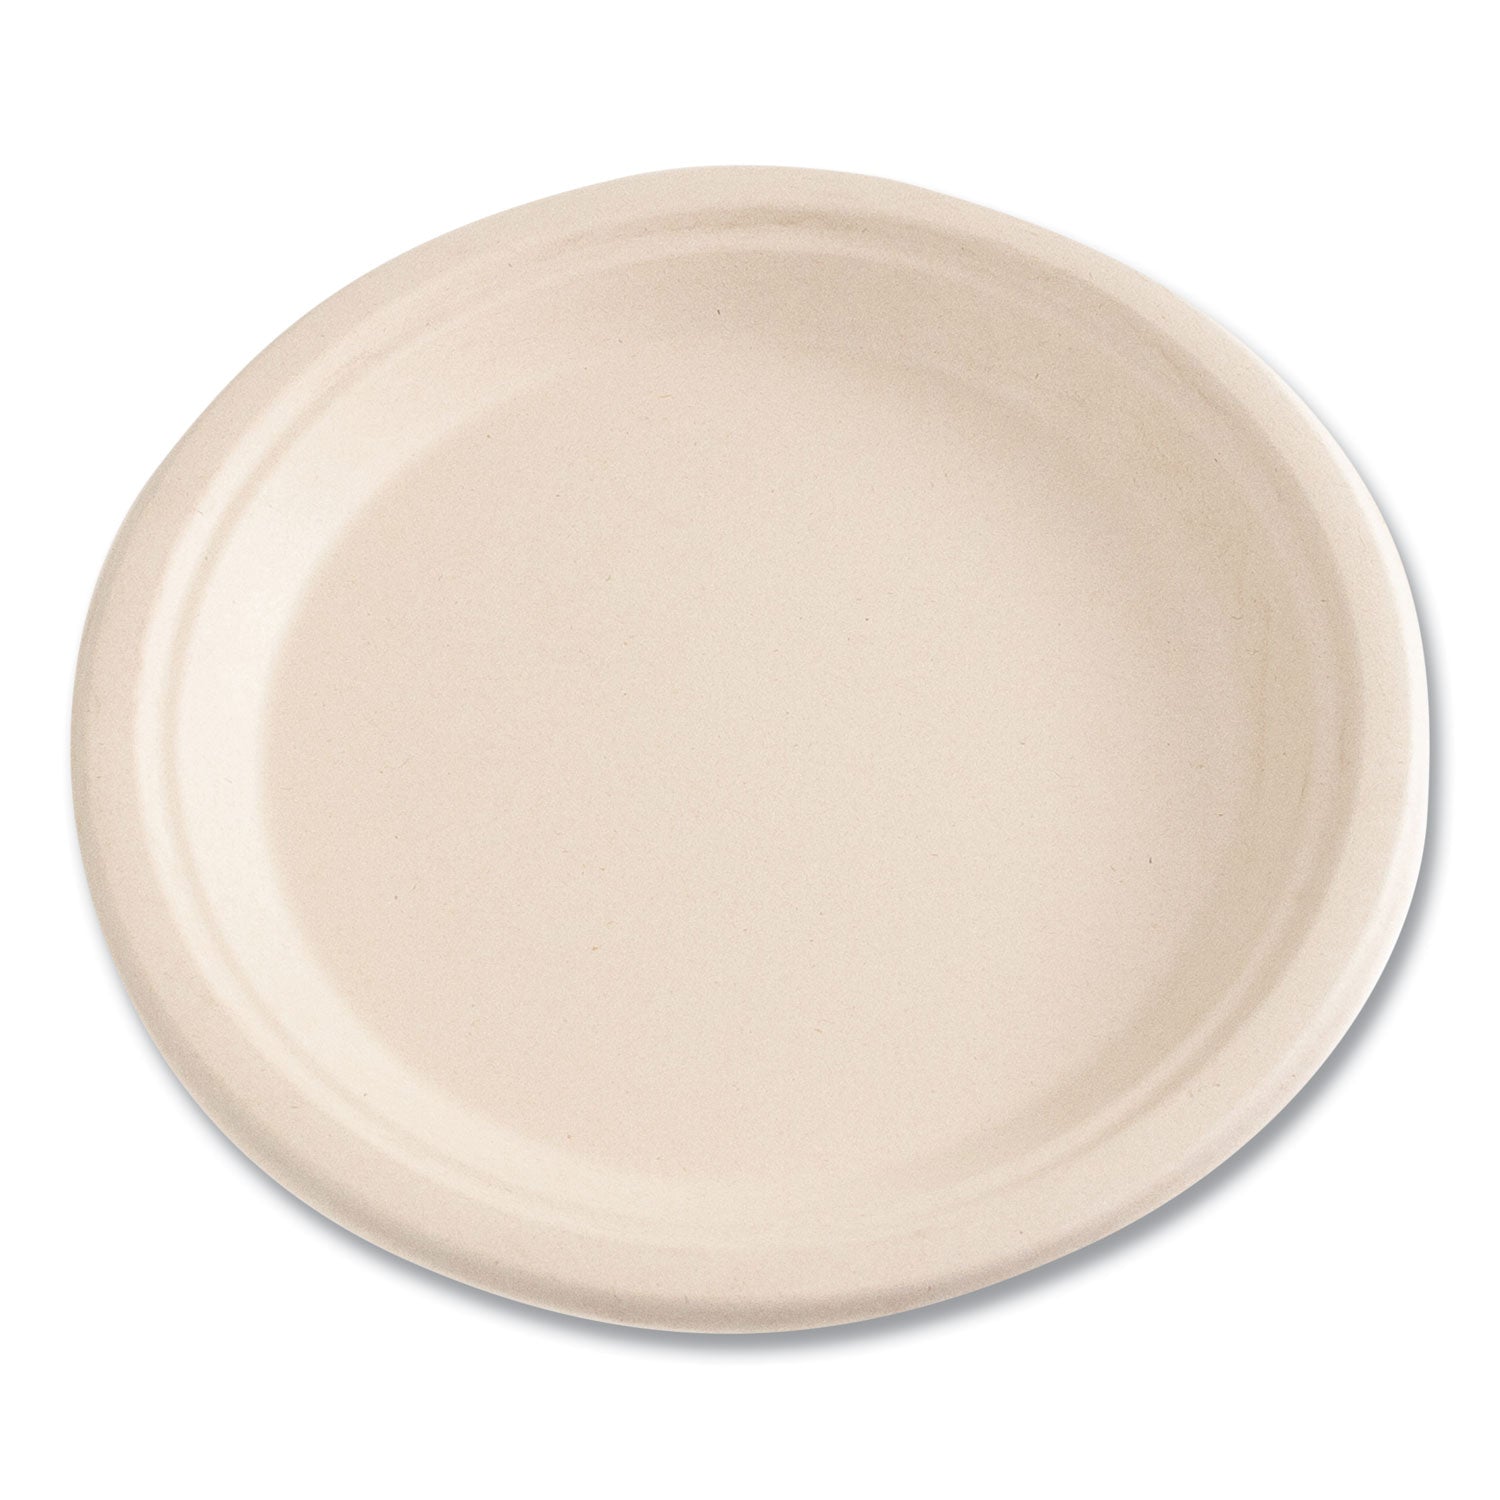 bagasse-pfas-free-dinnerware-plate-9-dia-tan-500-carton_bwkplate9npfa - 6